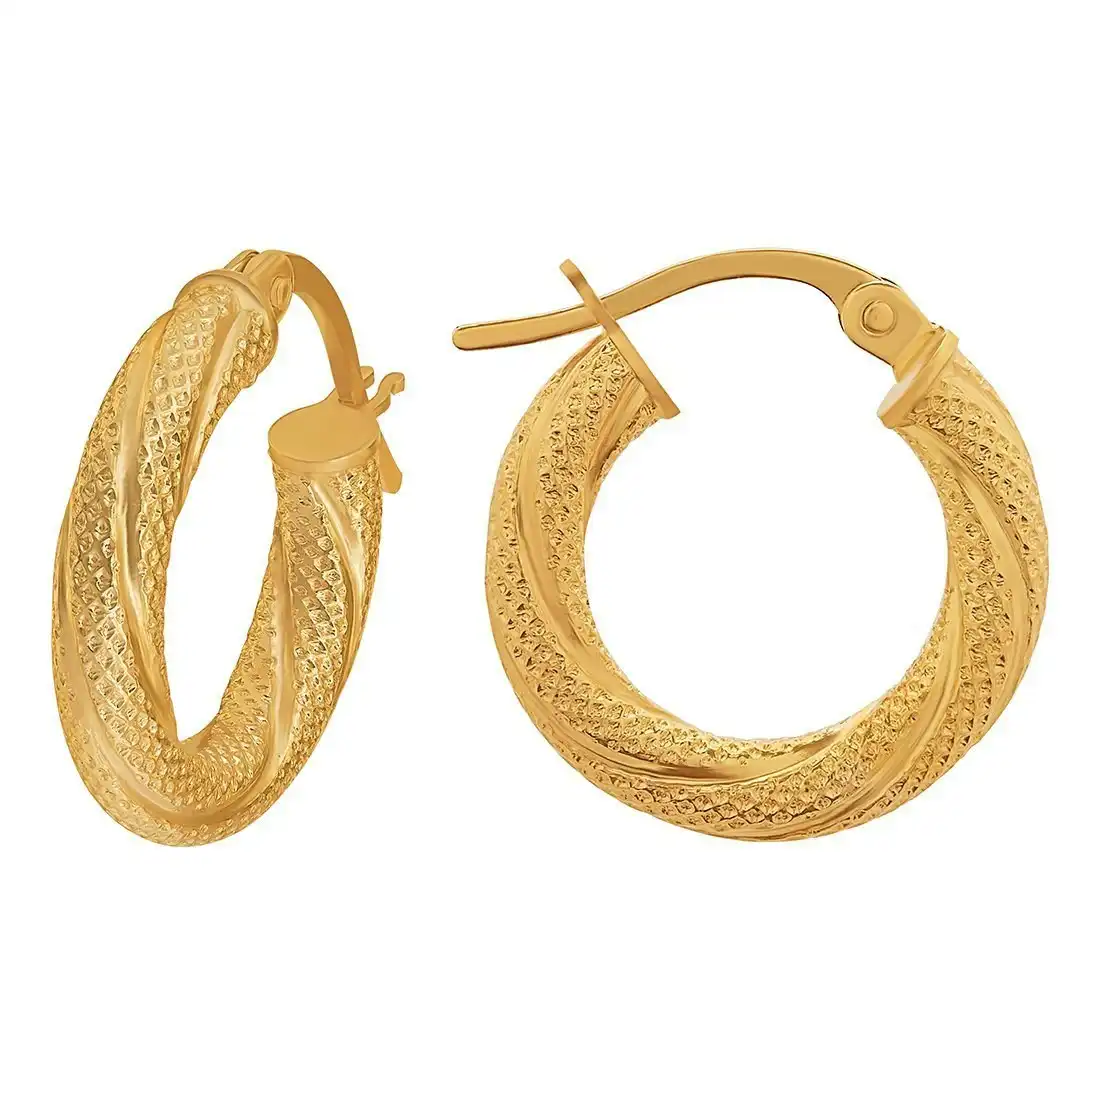 9ct Yellow Gold Patterned Twist Hoop Earrings 10mm